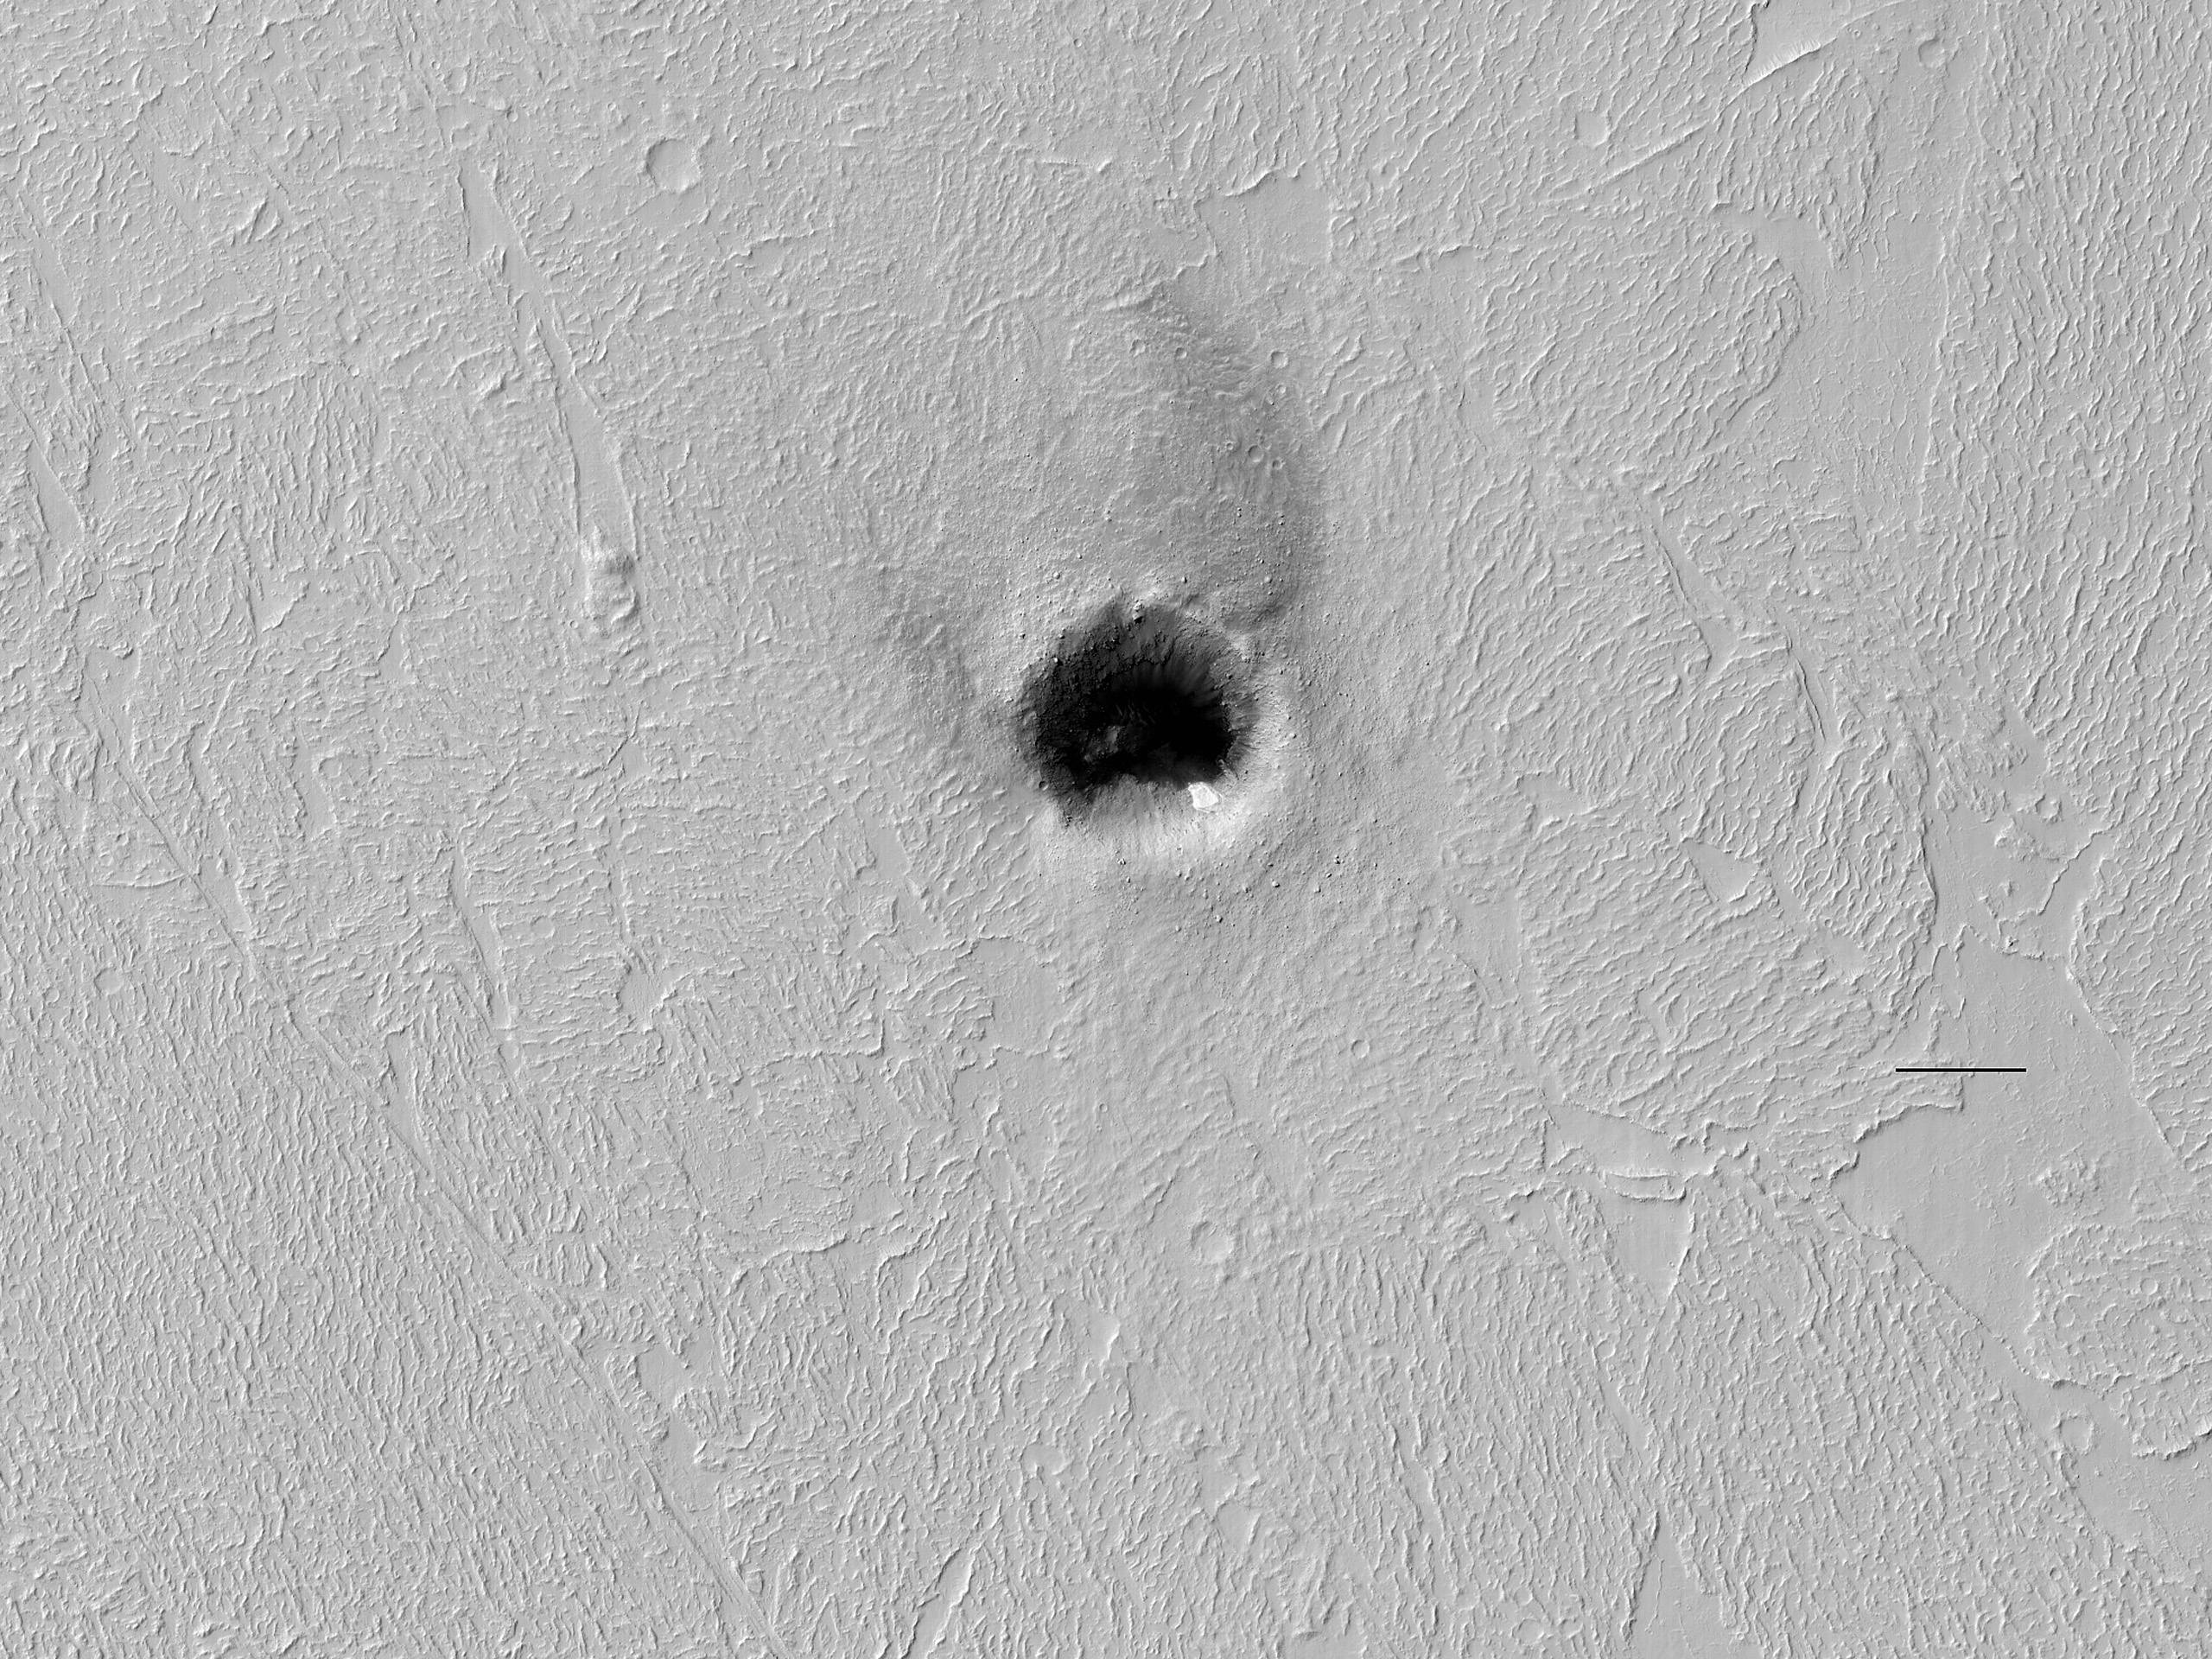 מכתש עם חול על המישור אמזוניס פלניציה (Amazonis Planitia)